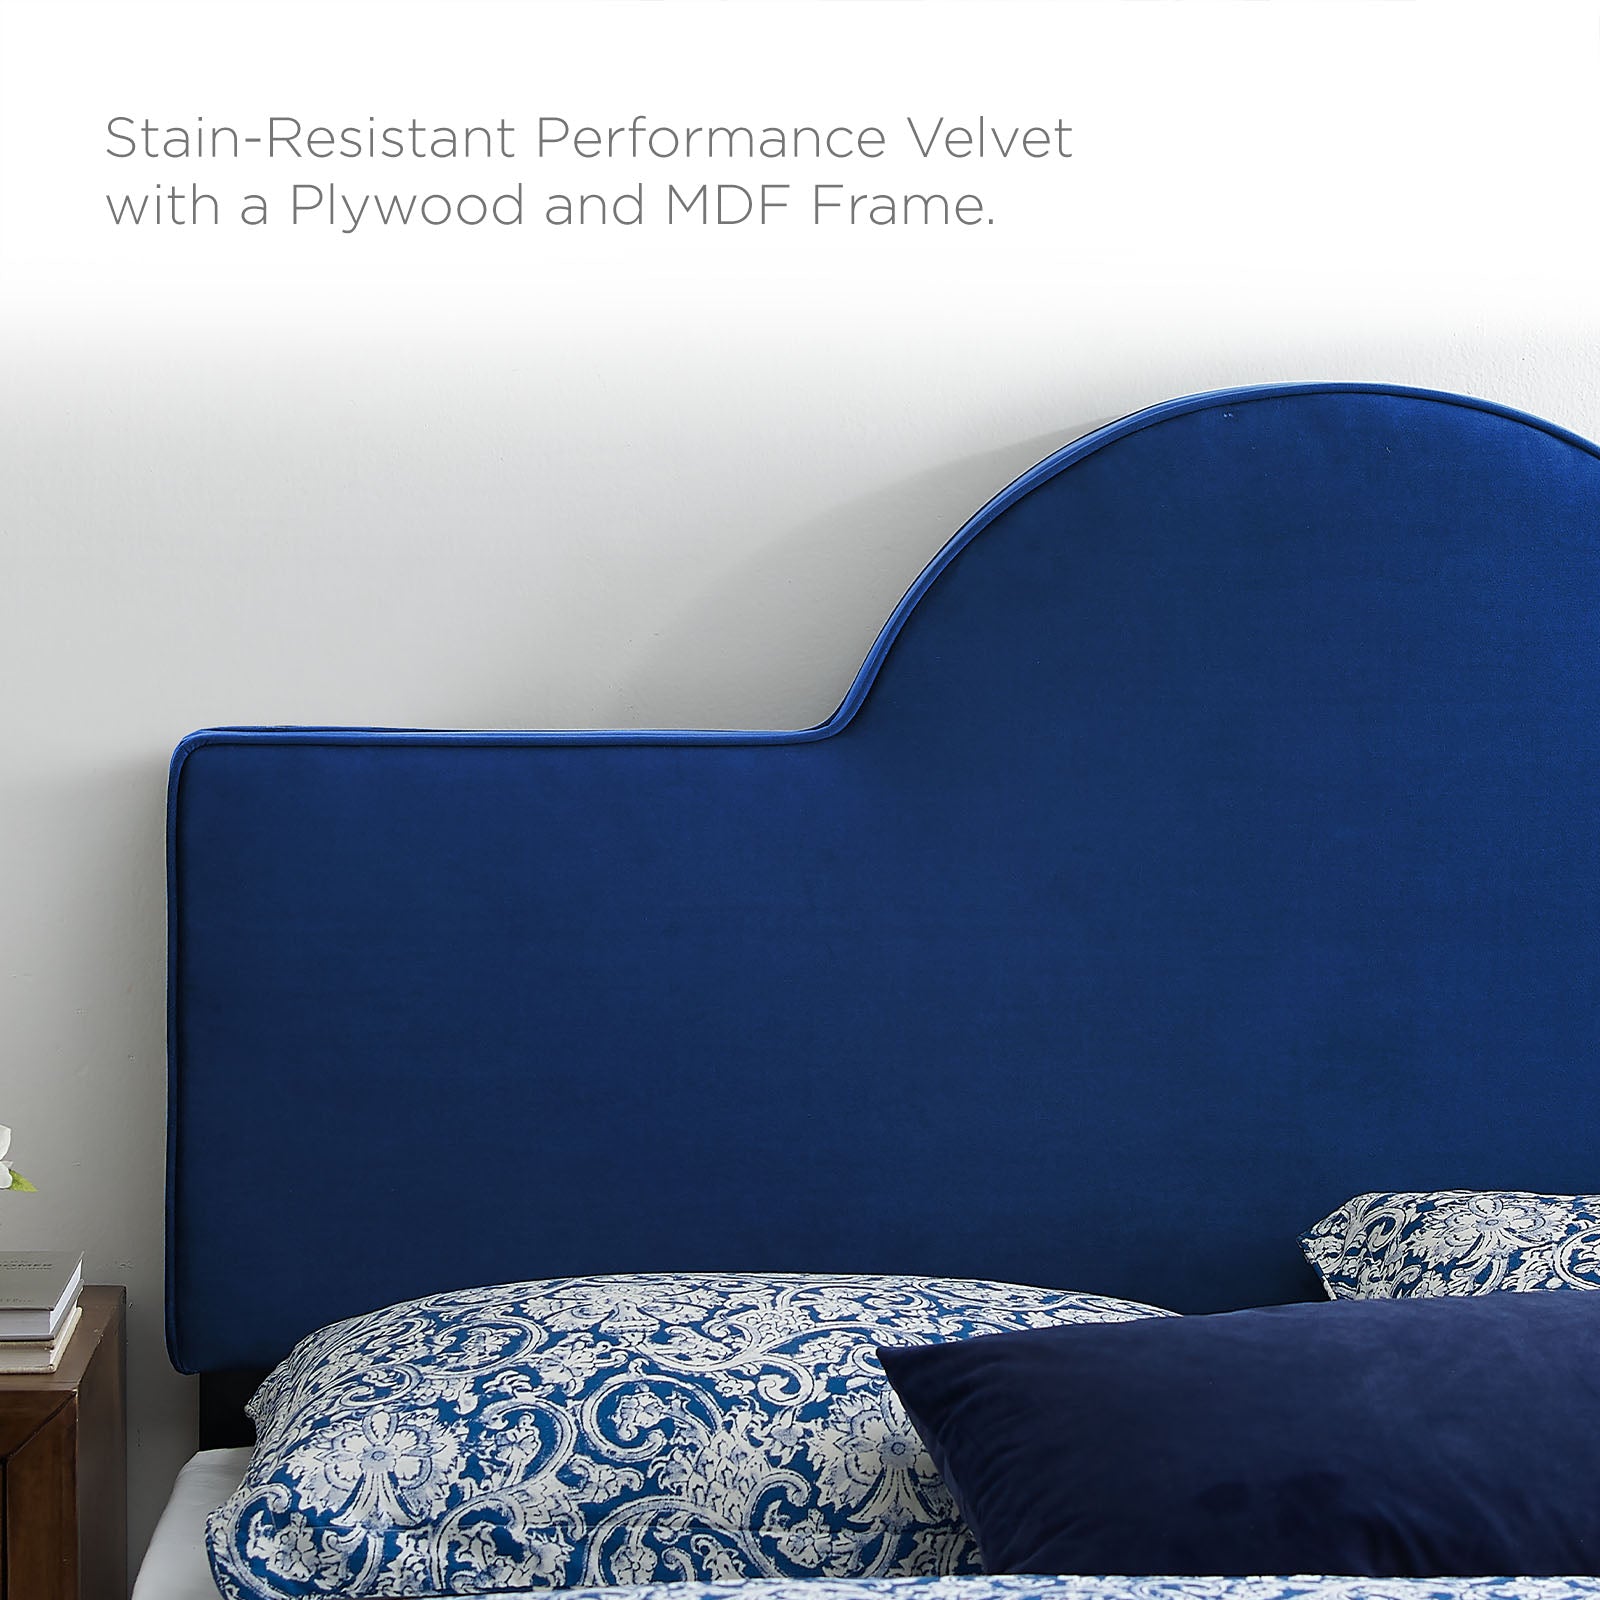 Soleil Performance Velvet King Bed - East Shore Modern Home Furnishings